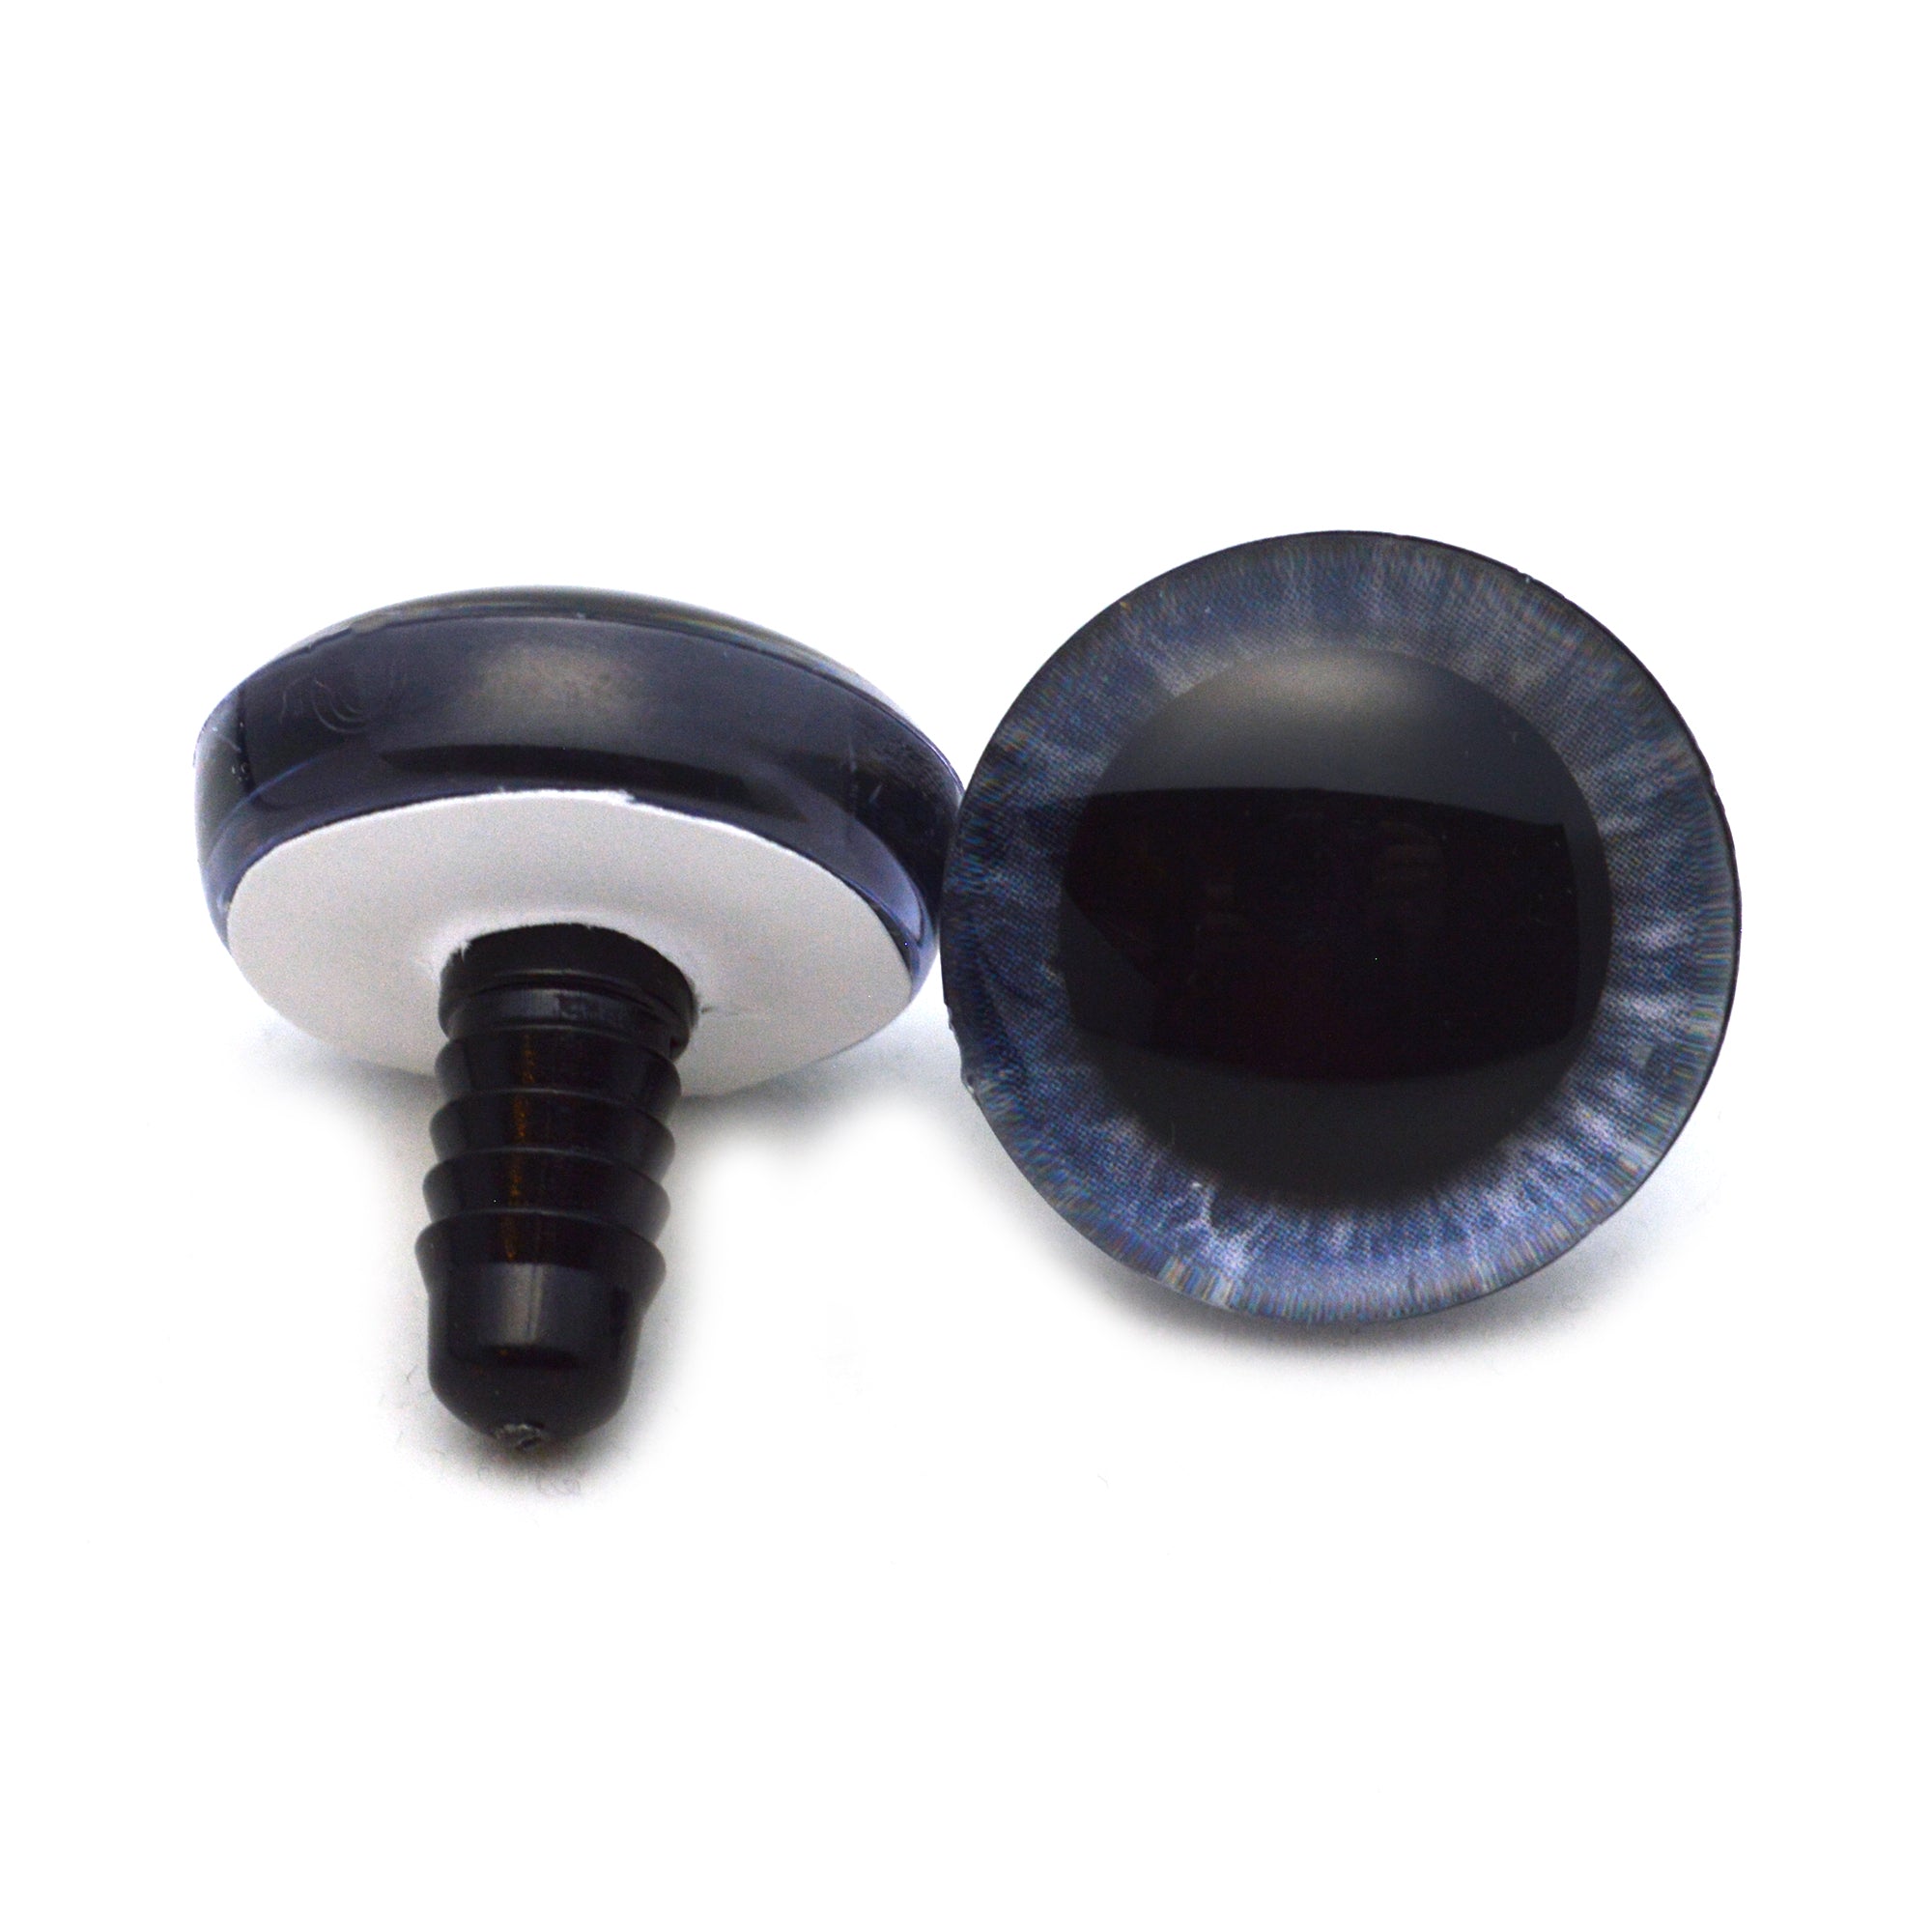 8mm Black Safety Eyes/Plastic Eyes - 30 Pairs